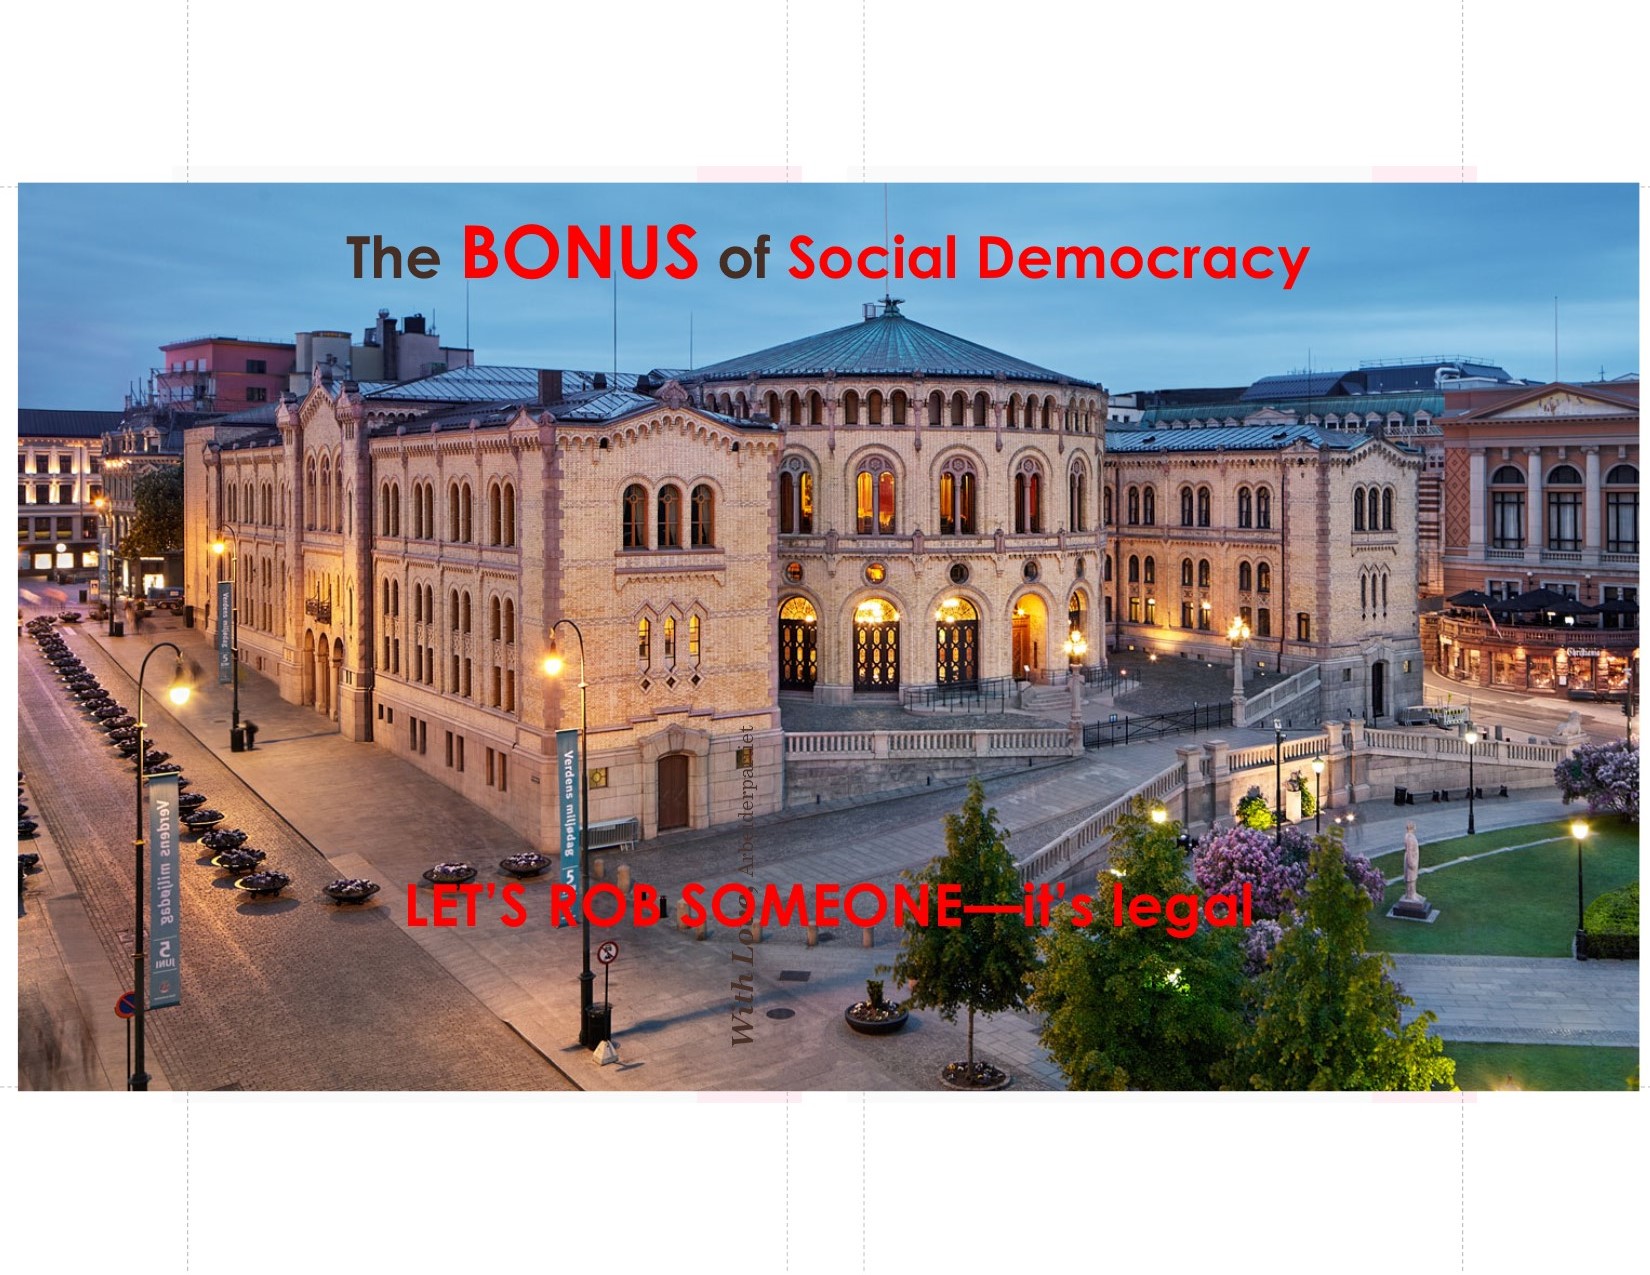 Sosialdemokratiets motivasjon